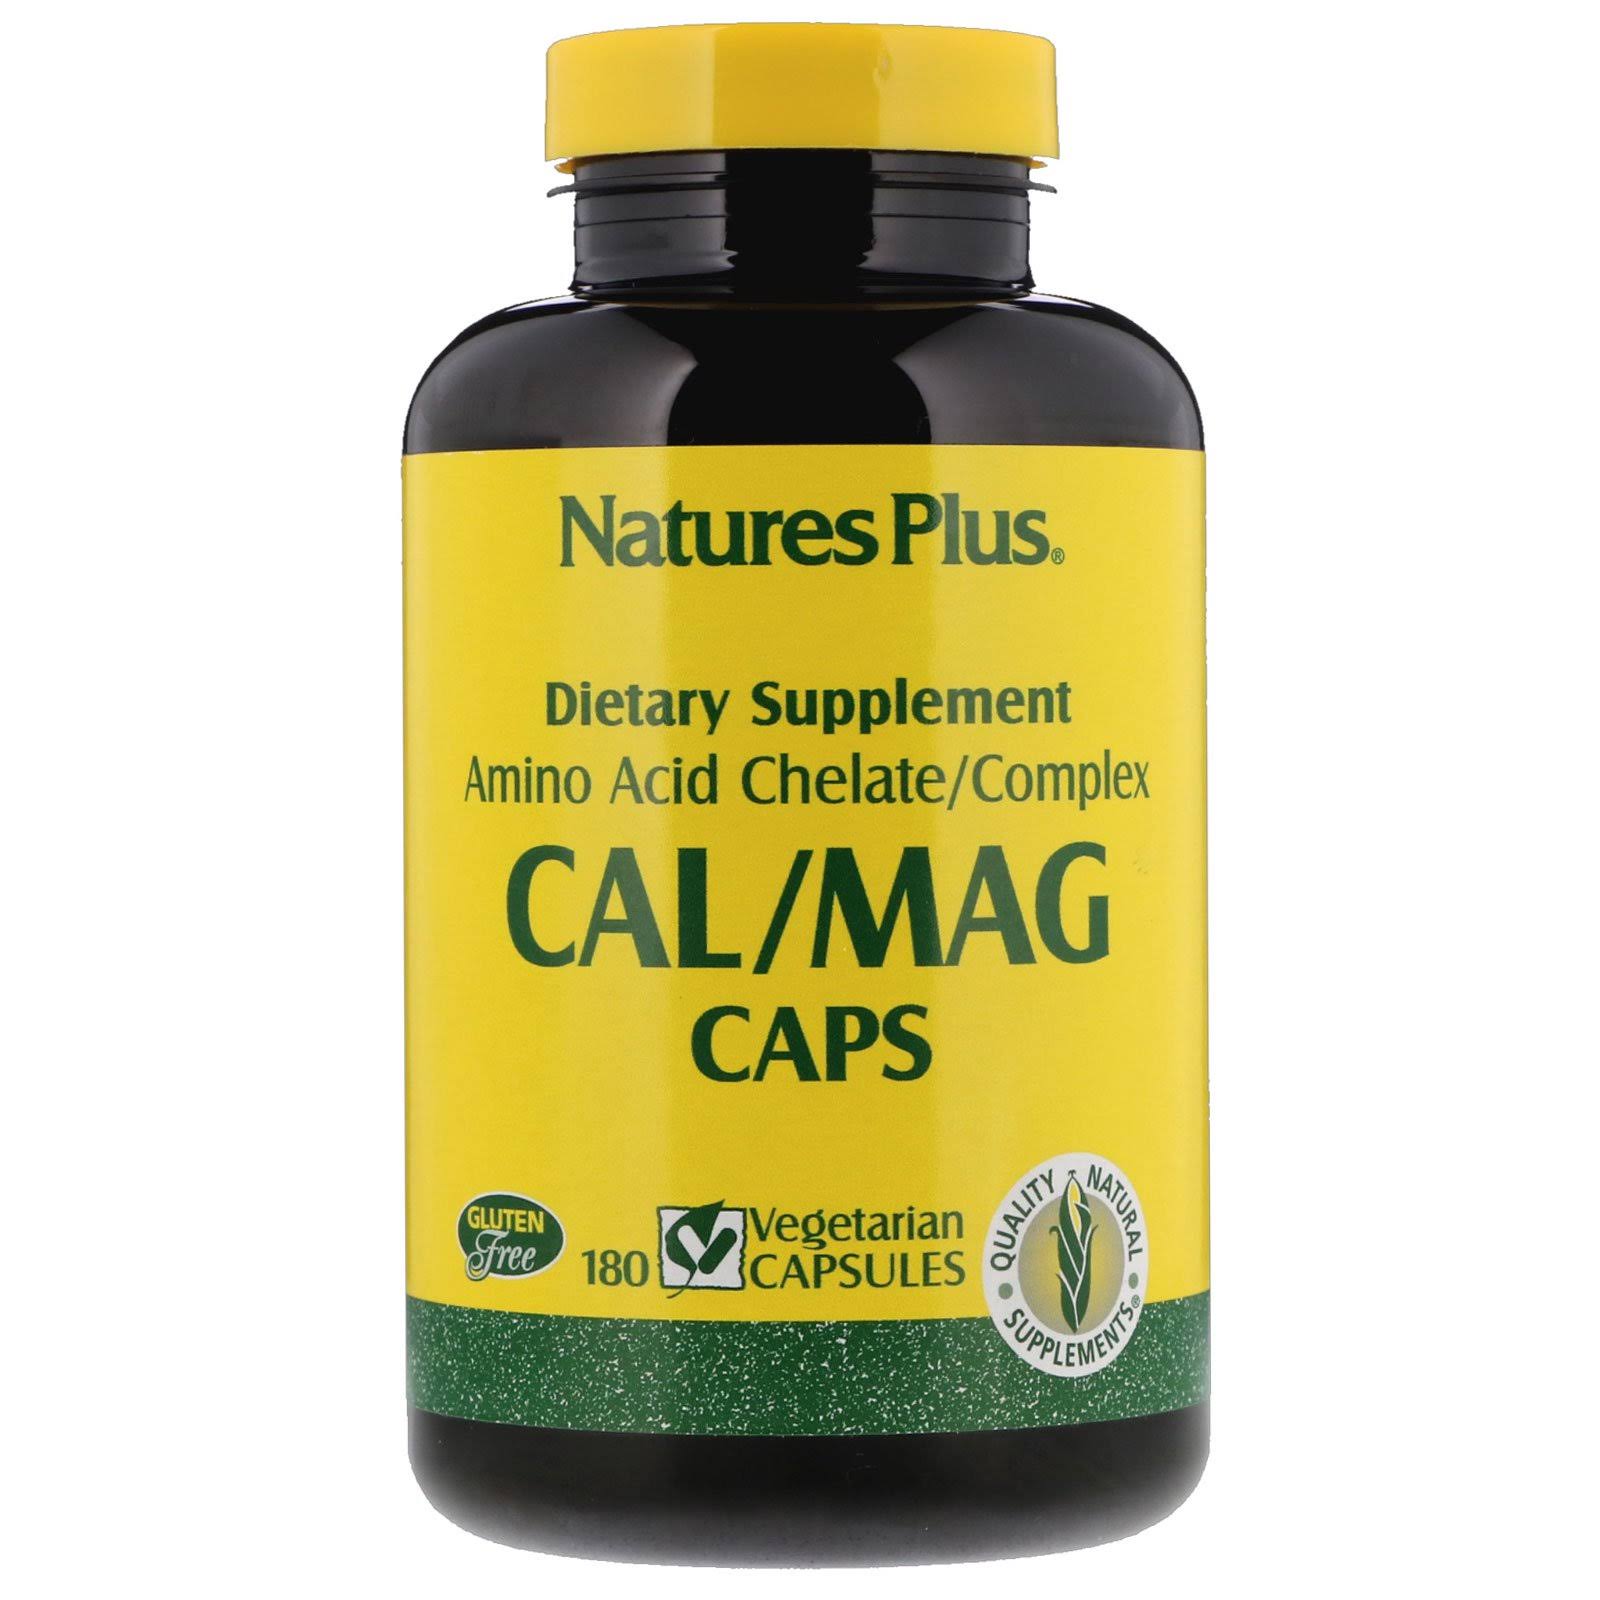 Nature's Plus Cal Mag Dietary Supplement - 180 capsules